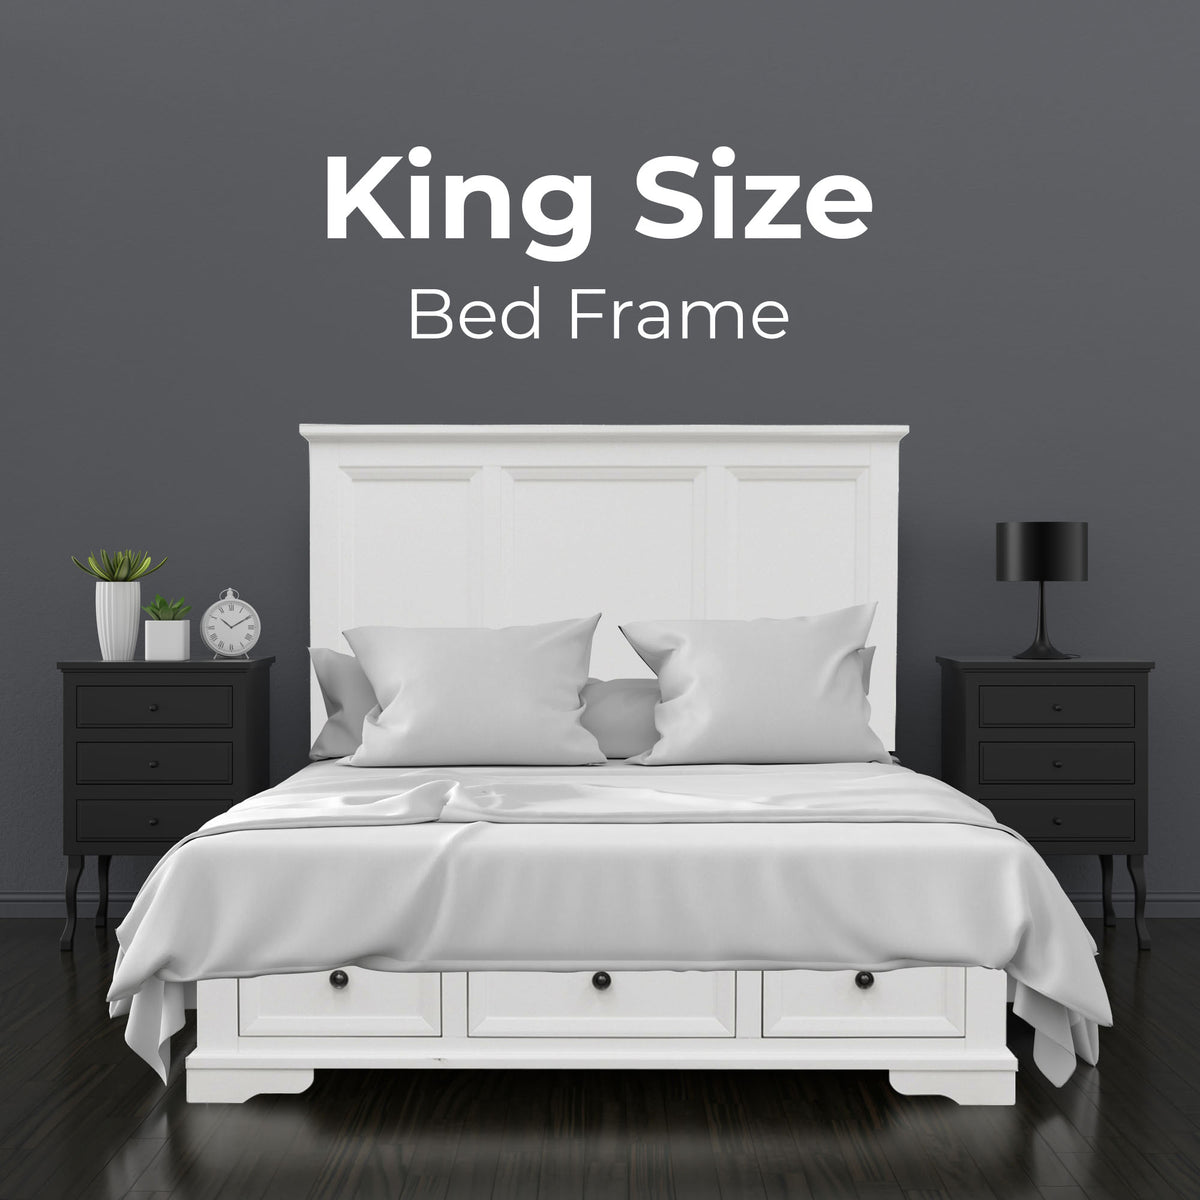 Celosia 4pc Bed Frame Bedside Tallboy Suite King 